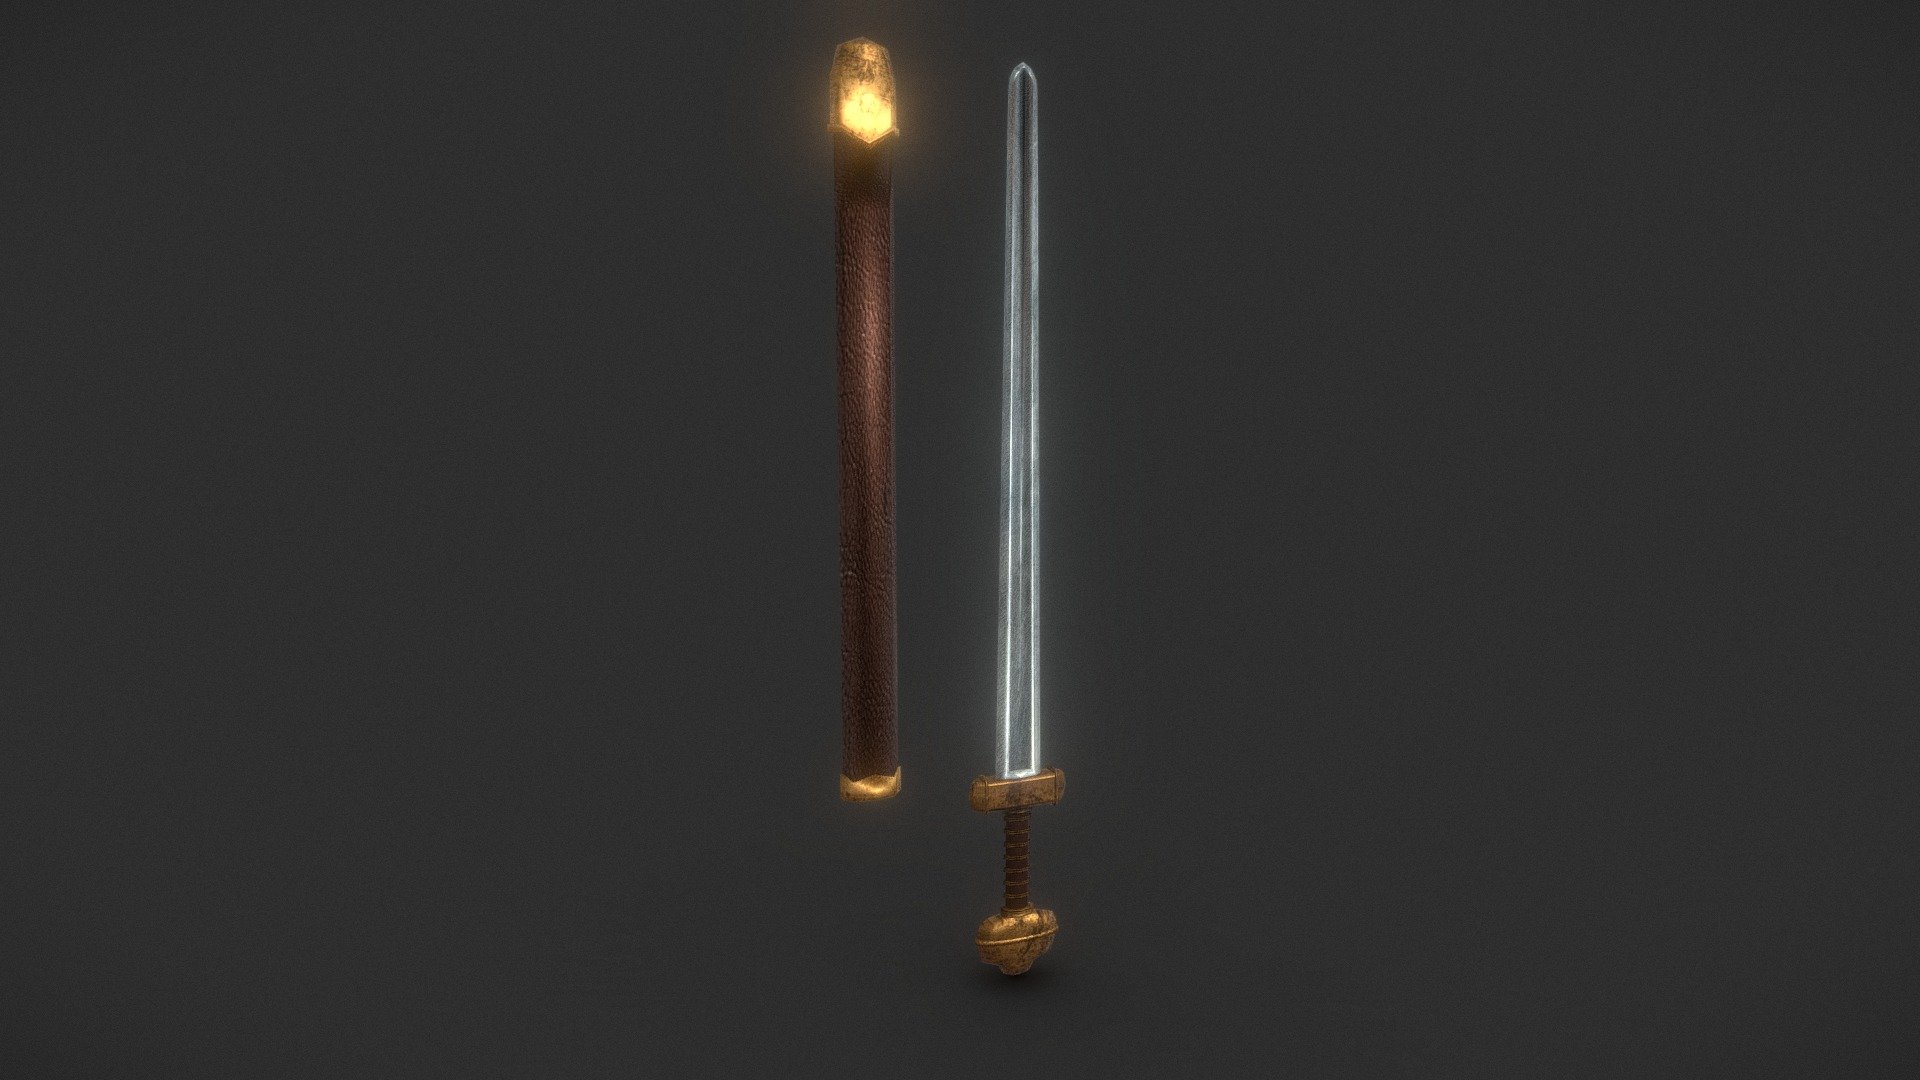 Norse Sword